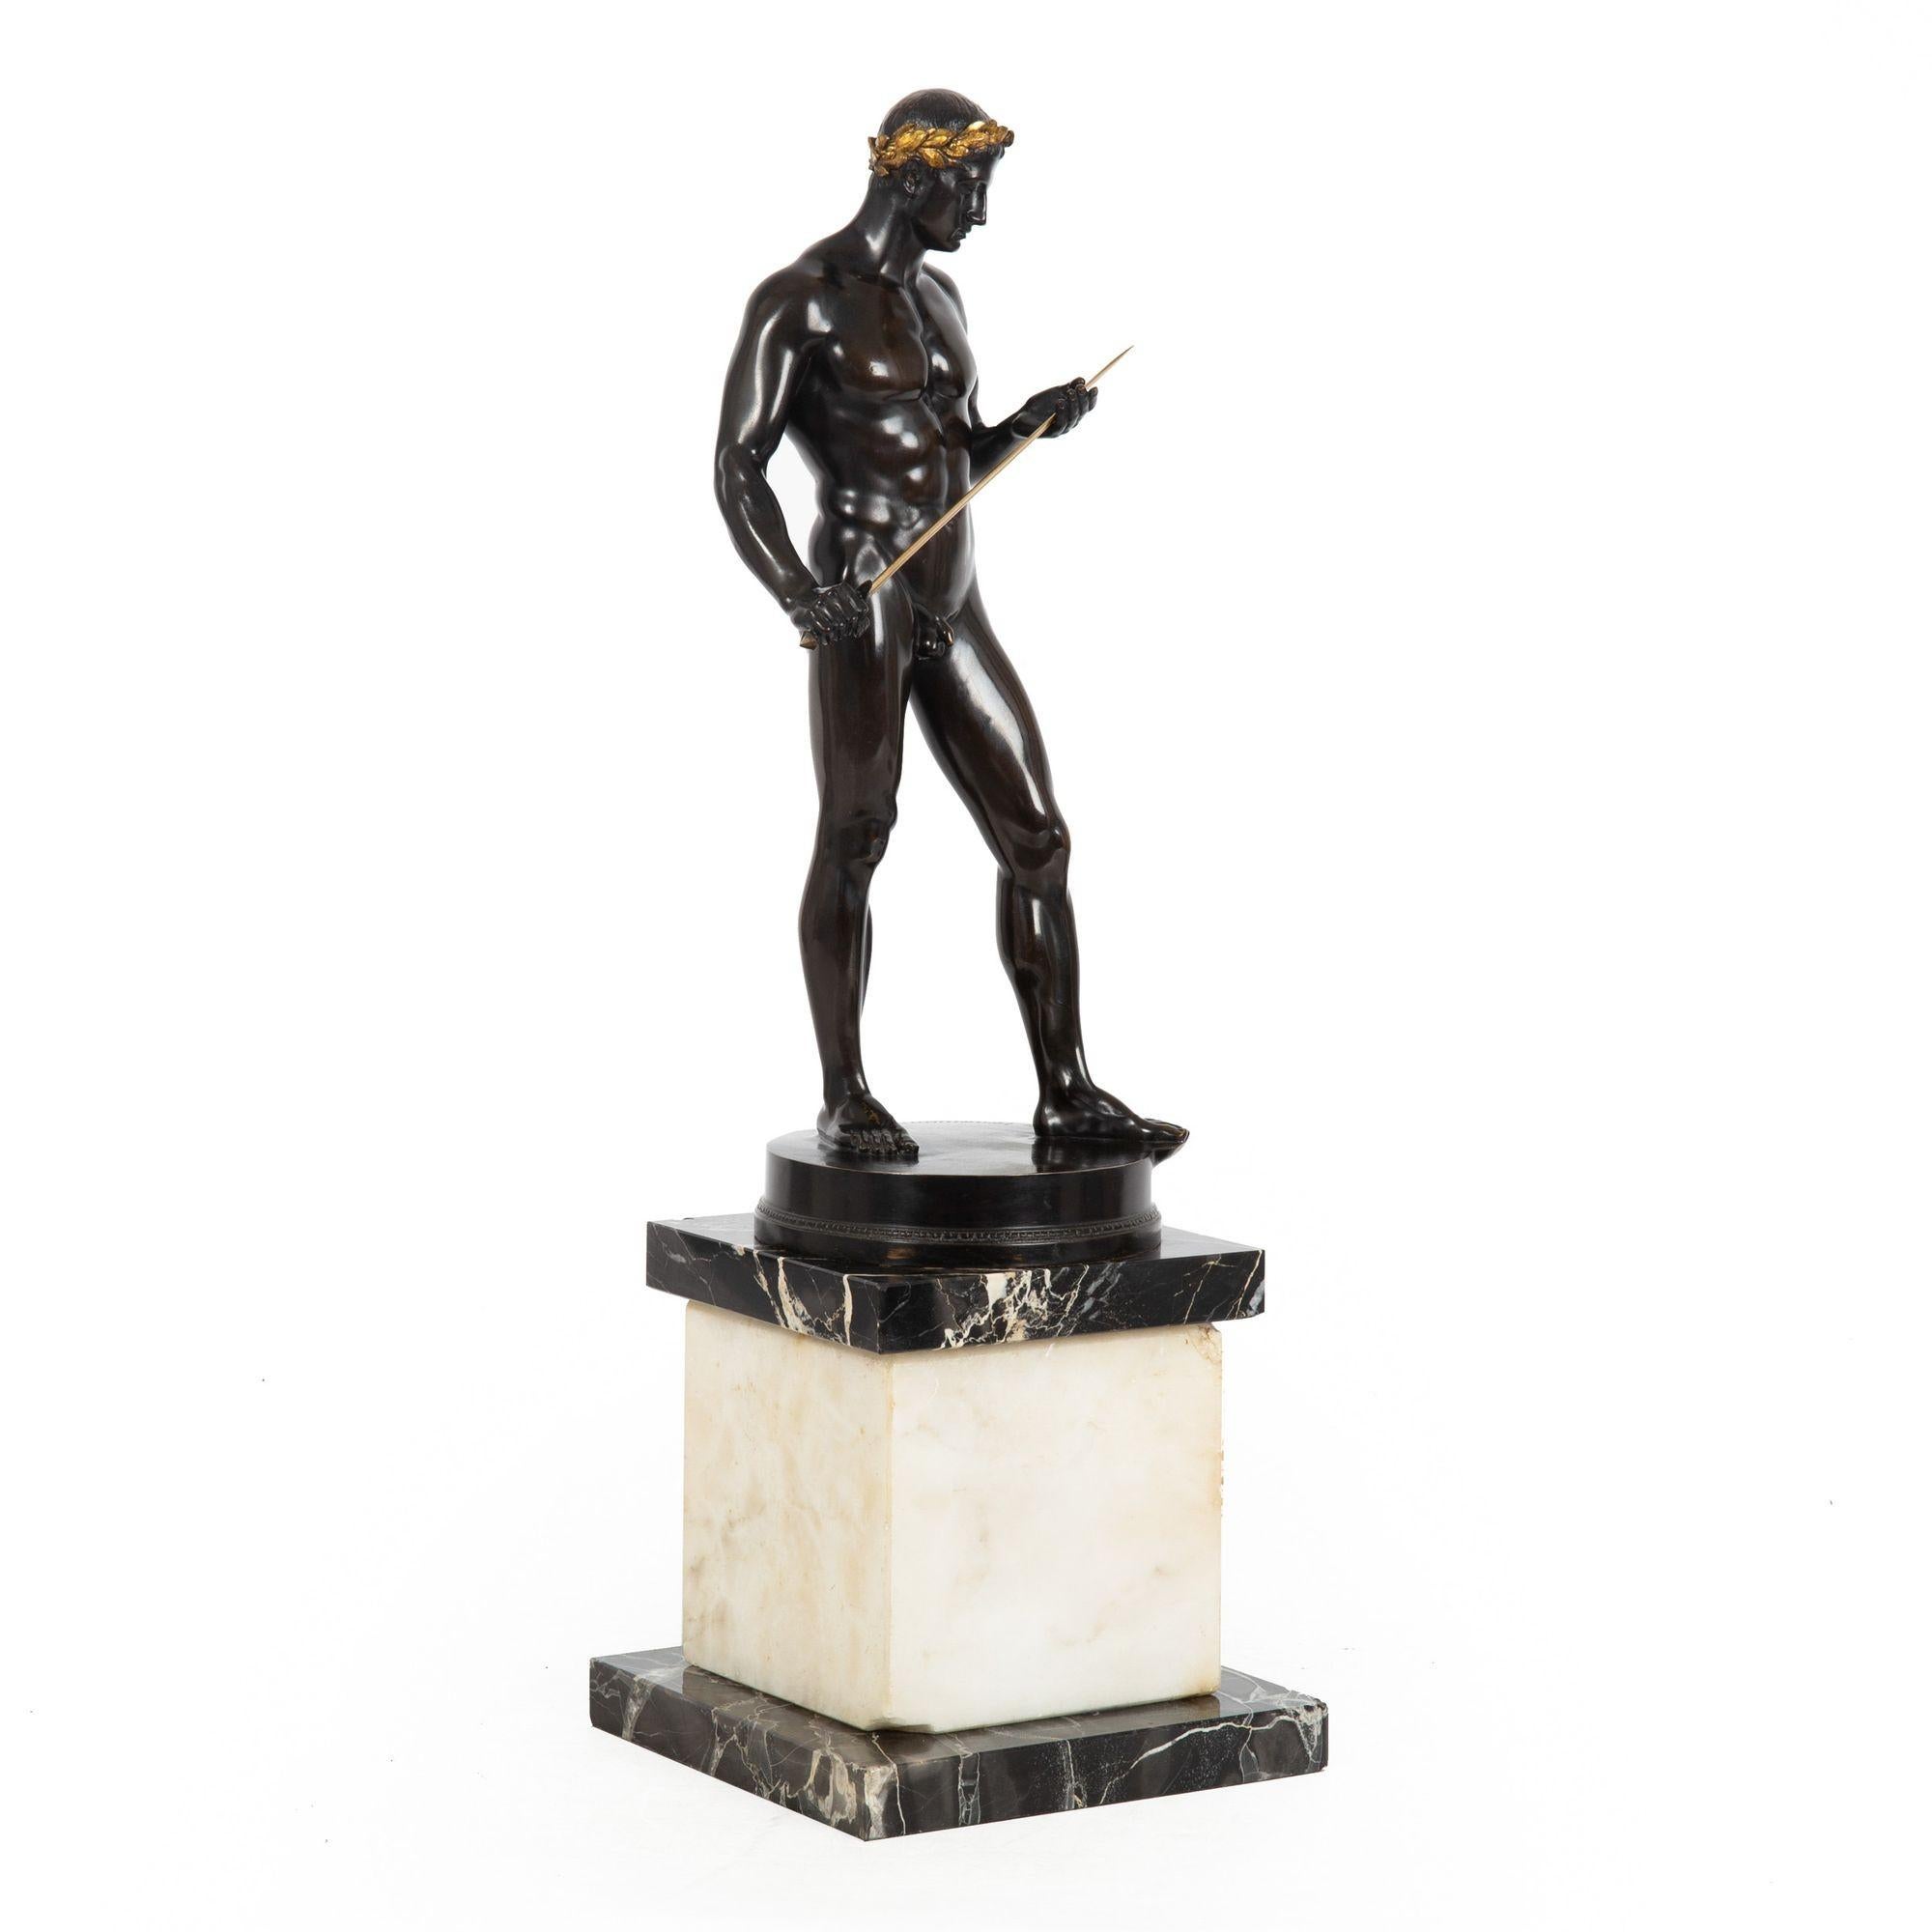 Art Deco German Antique Bronze Sculpture “Fencer” by Fritz Heinemann For Sale